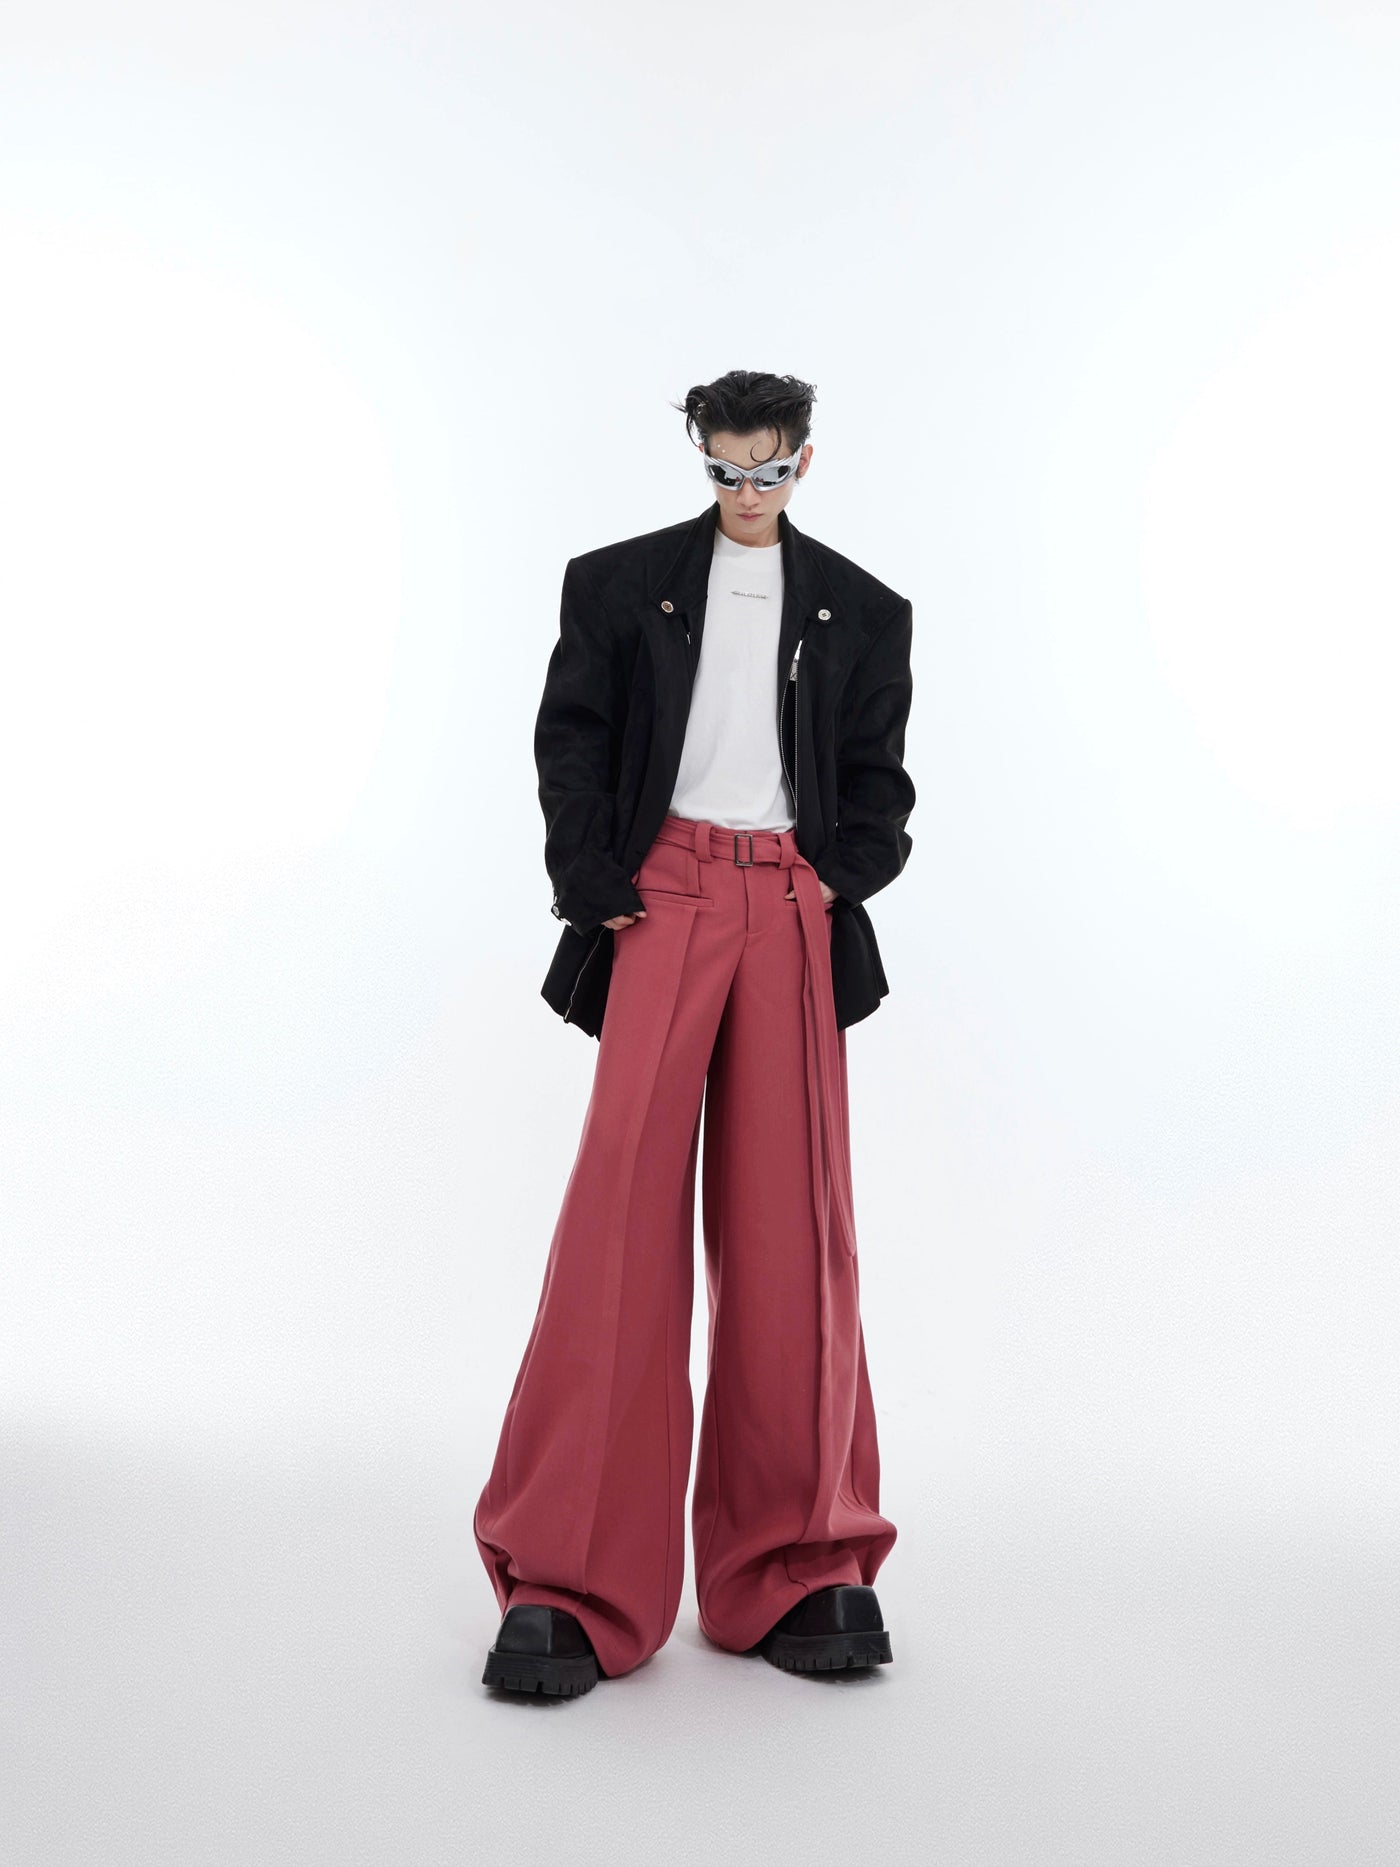 Long Cloth Belt Pants Korean Street Fashion Pants By Argue Culture Shop Online at OH Vault